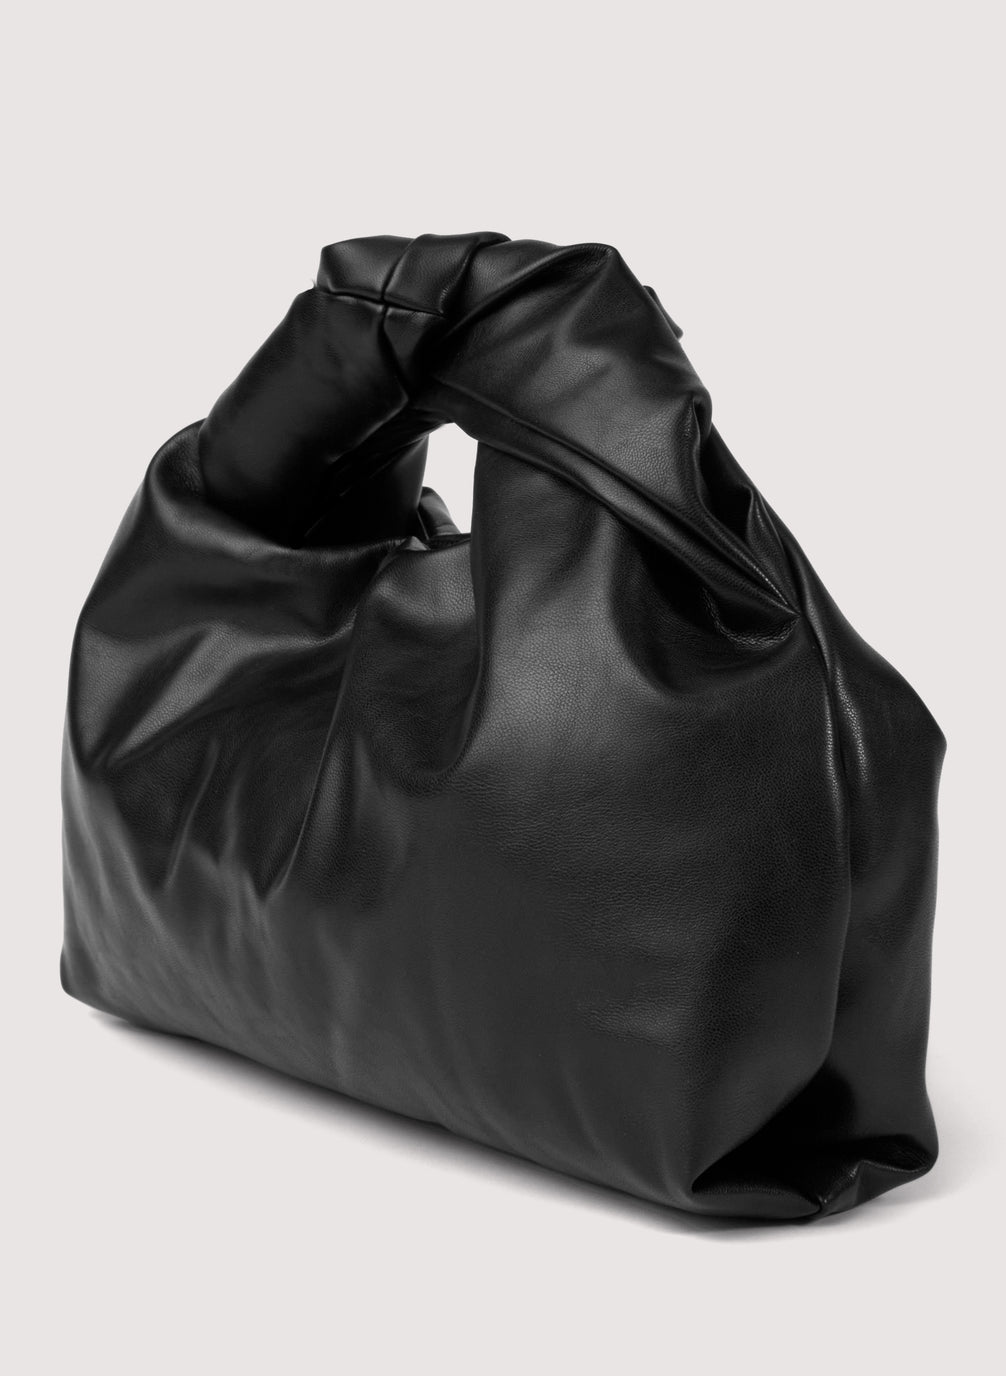 Mini Tote bag in Black Vegan leather, Vegan tote bag